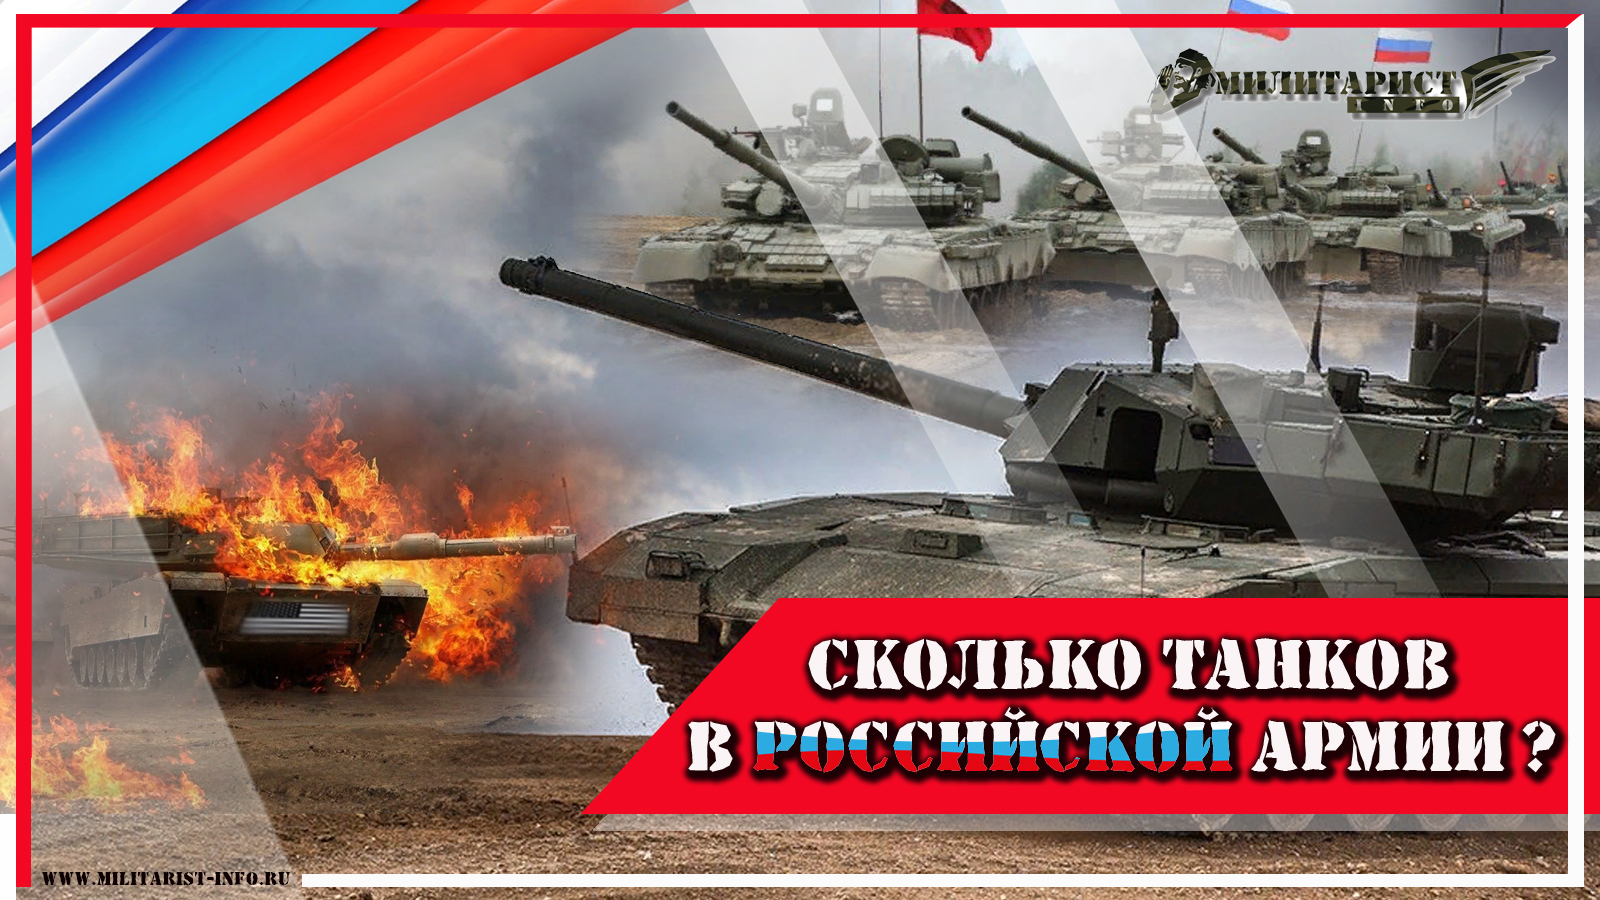 militarist-info.ru